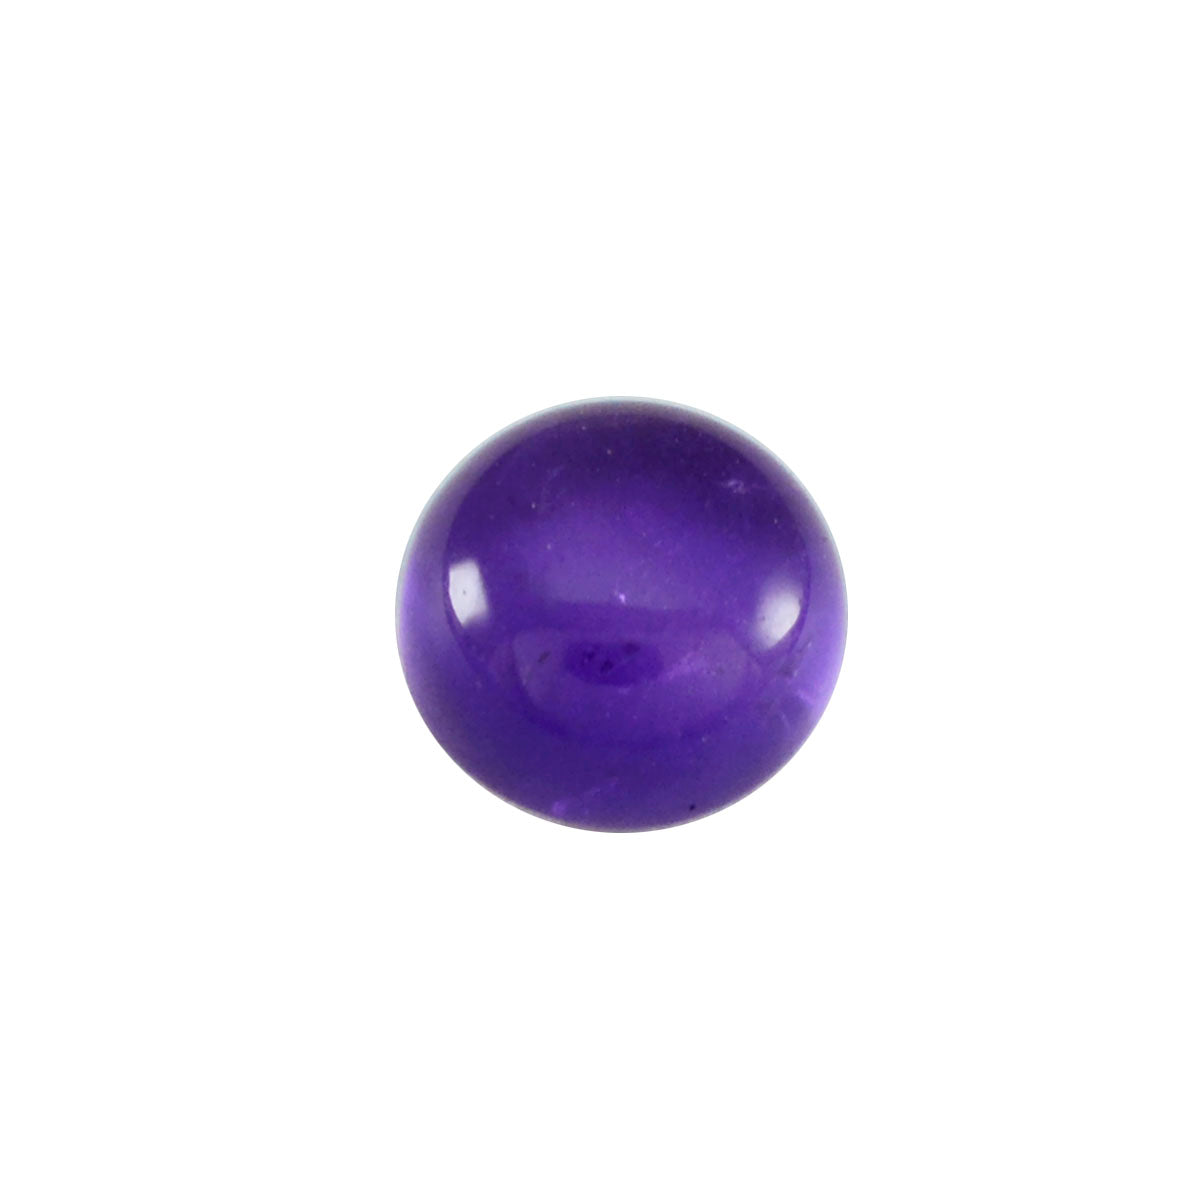 Riyogems 1 pieza cabujón de amatista púrpura 12x12 mm forma redonda gema suelta de calidad A+